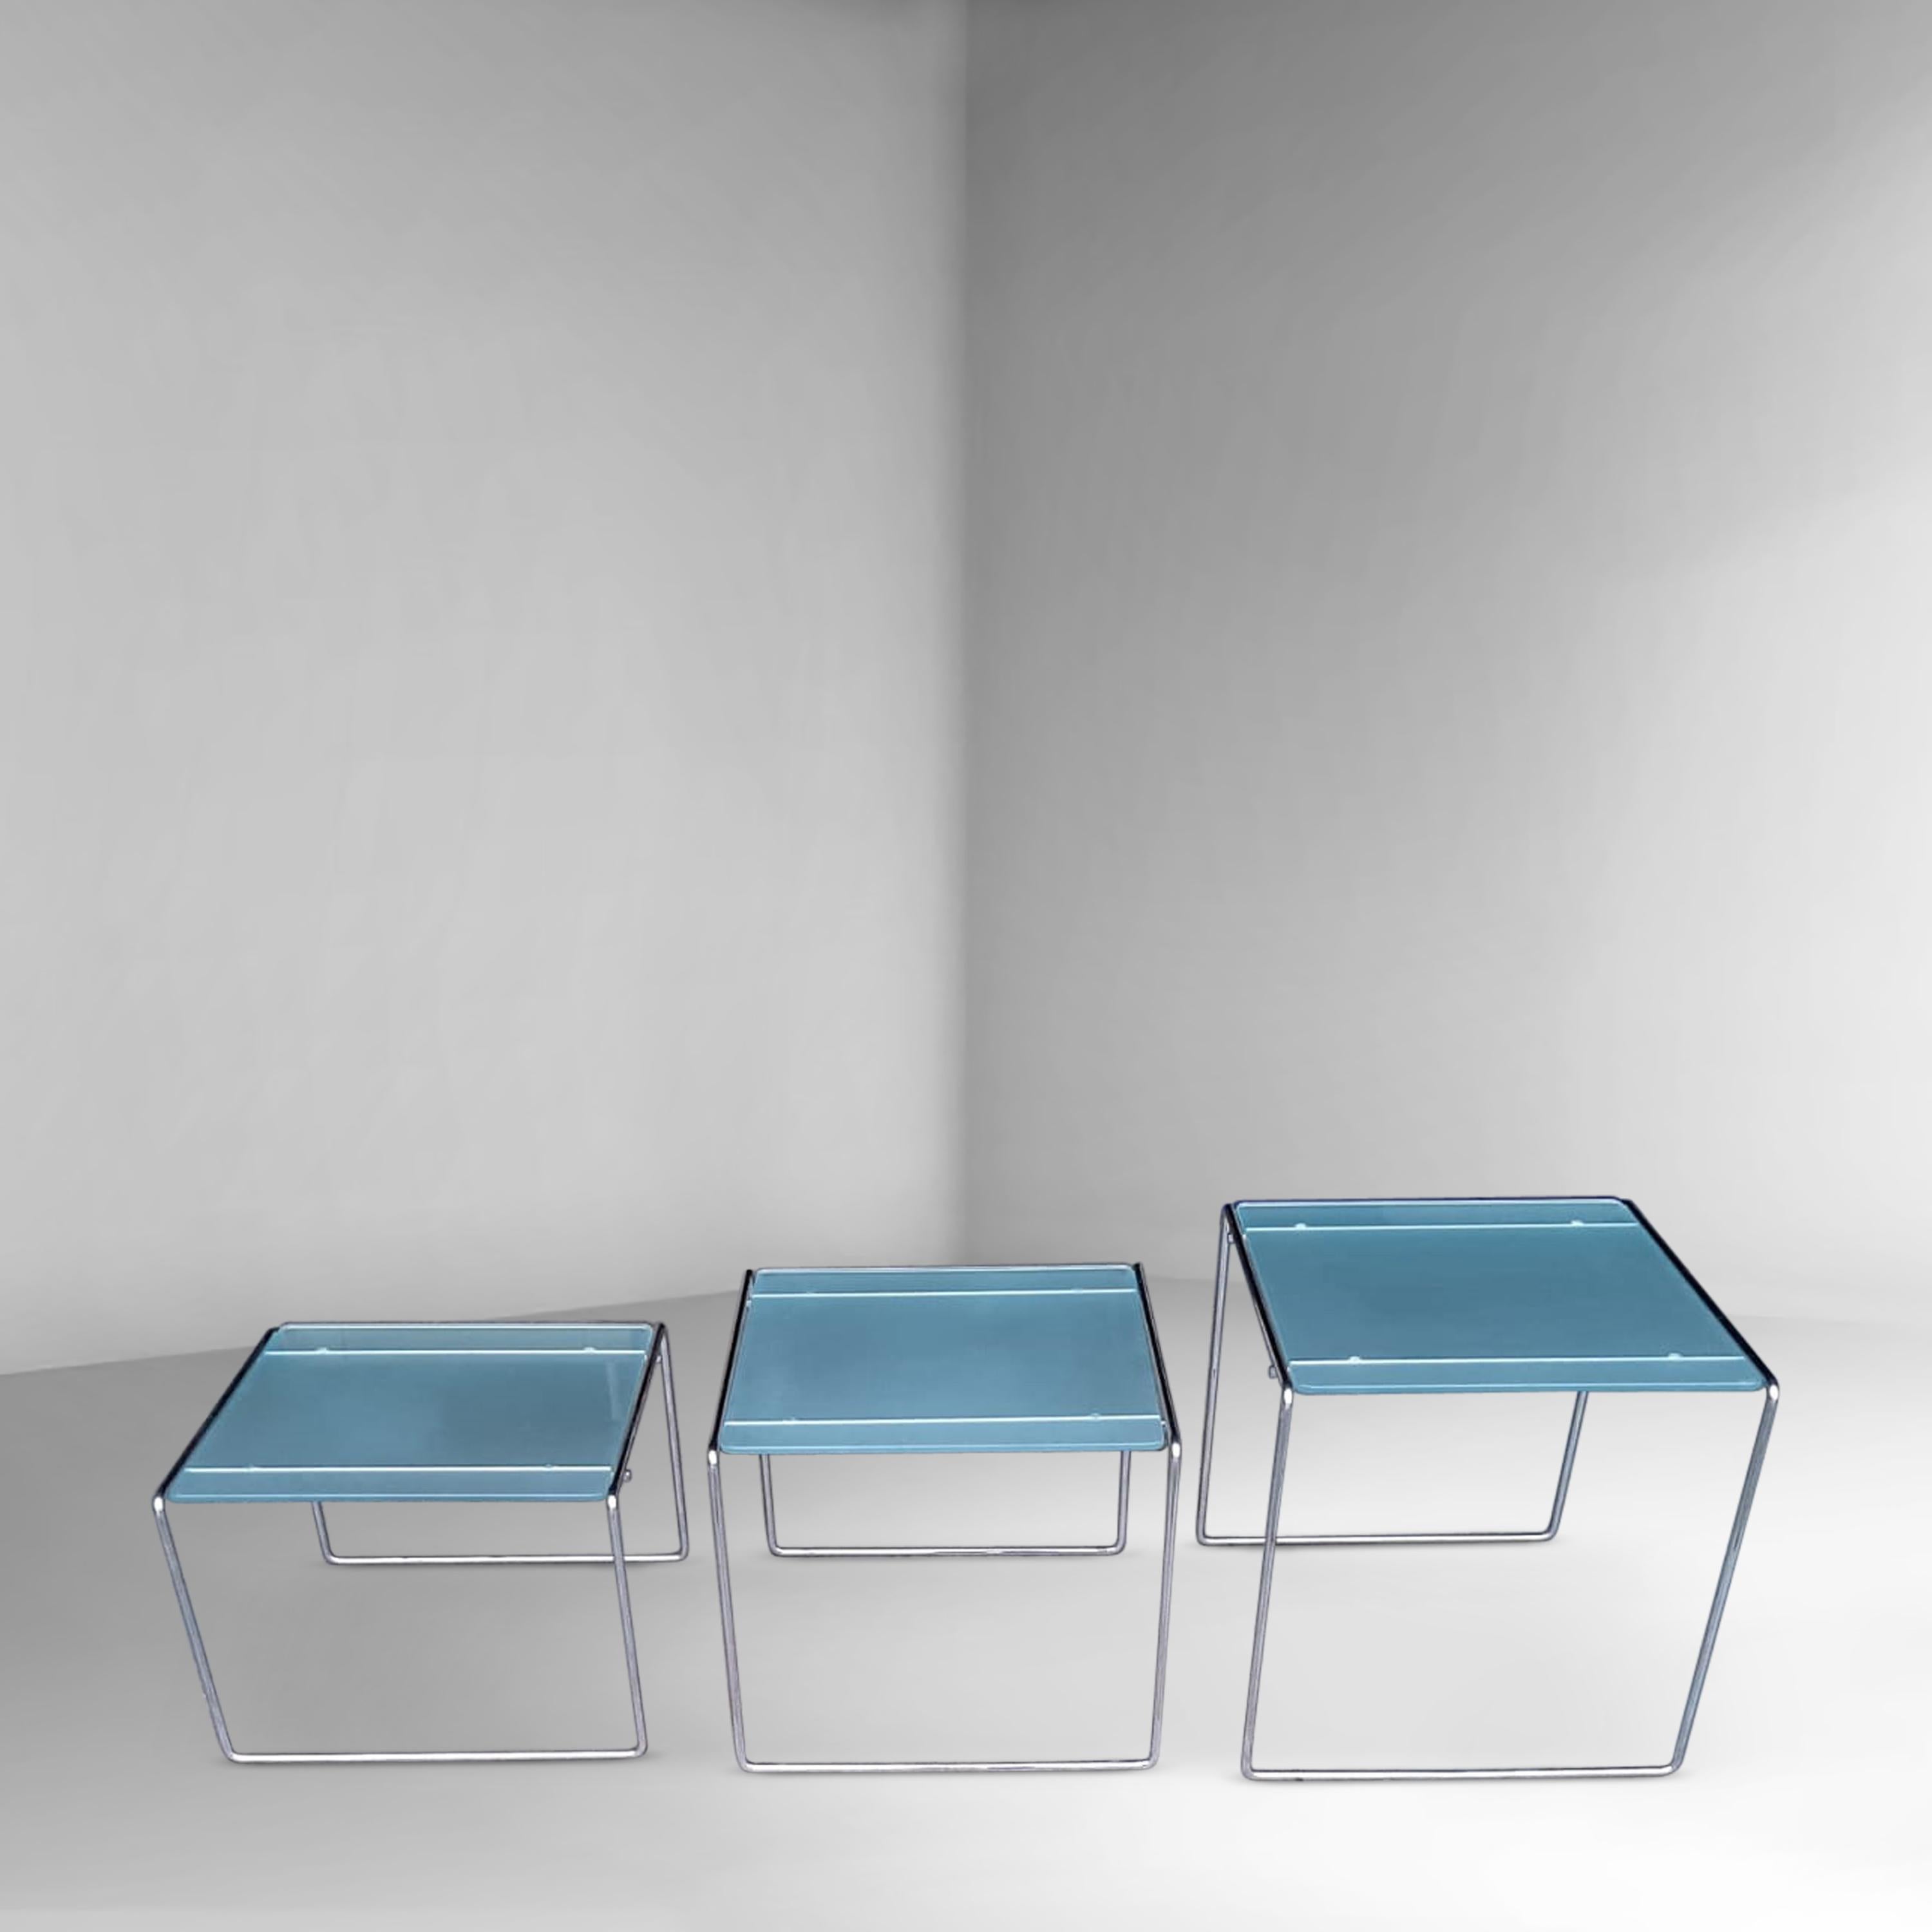 Table d'appoint au design minimaliste, inspirée par Mies van der Rohe avec des lignes abstraites simples. Le cadre inférieur métallique est en acier plié et se compose d'une seule partie. L'ensemble du design est très élégant grâce à son cadre de